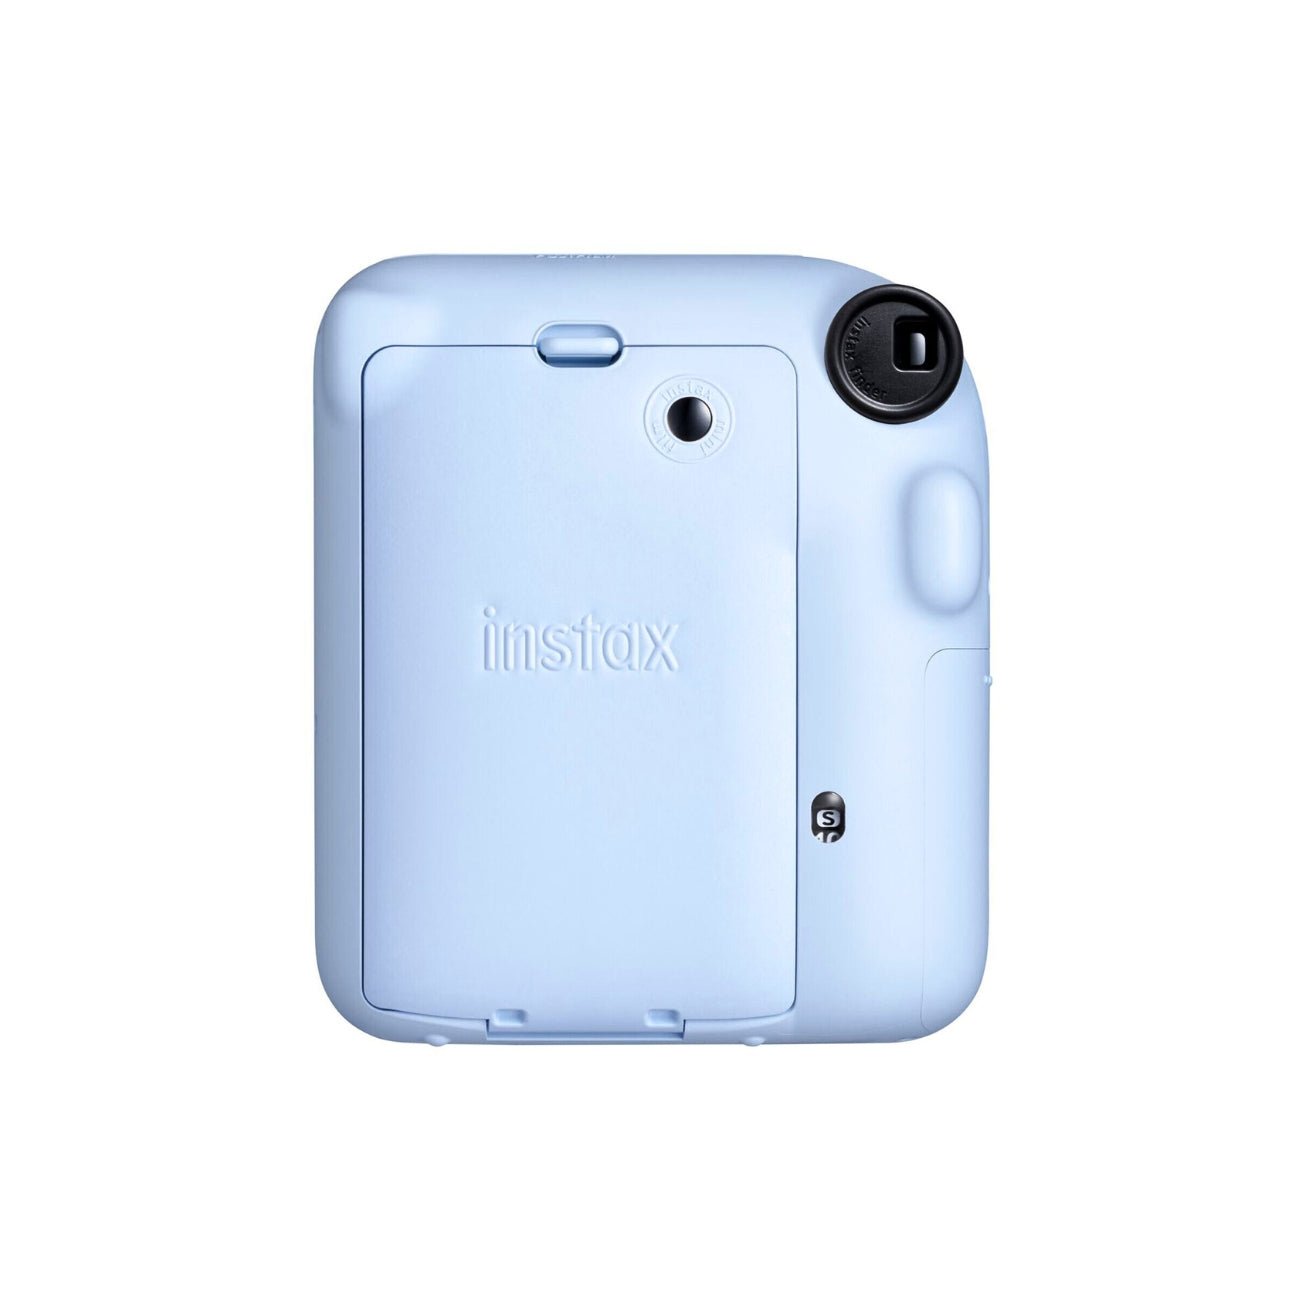 Fujifilm INSTAX Mini 12 Instant Film Camera (Blue) - Rear view